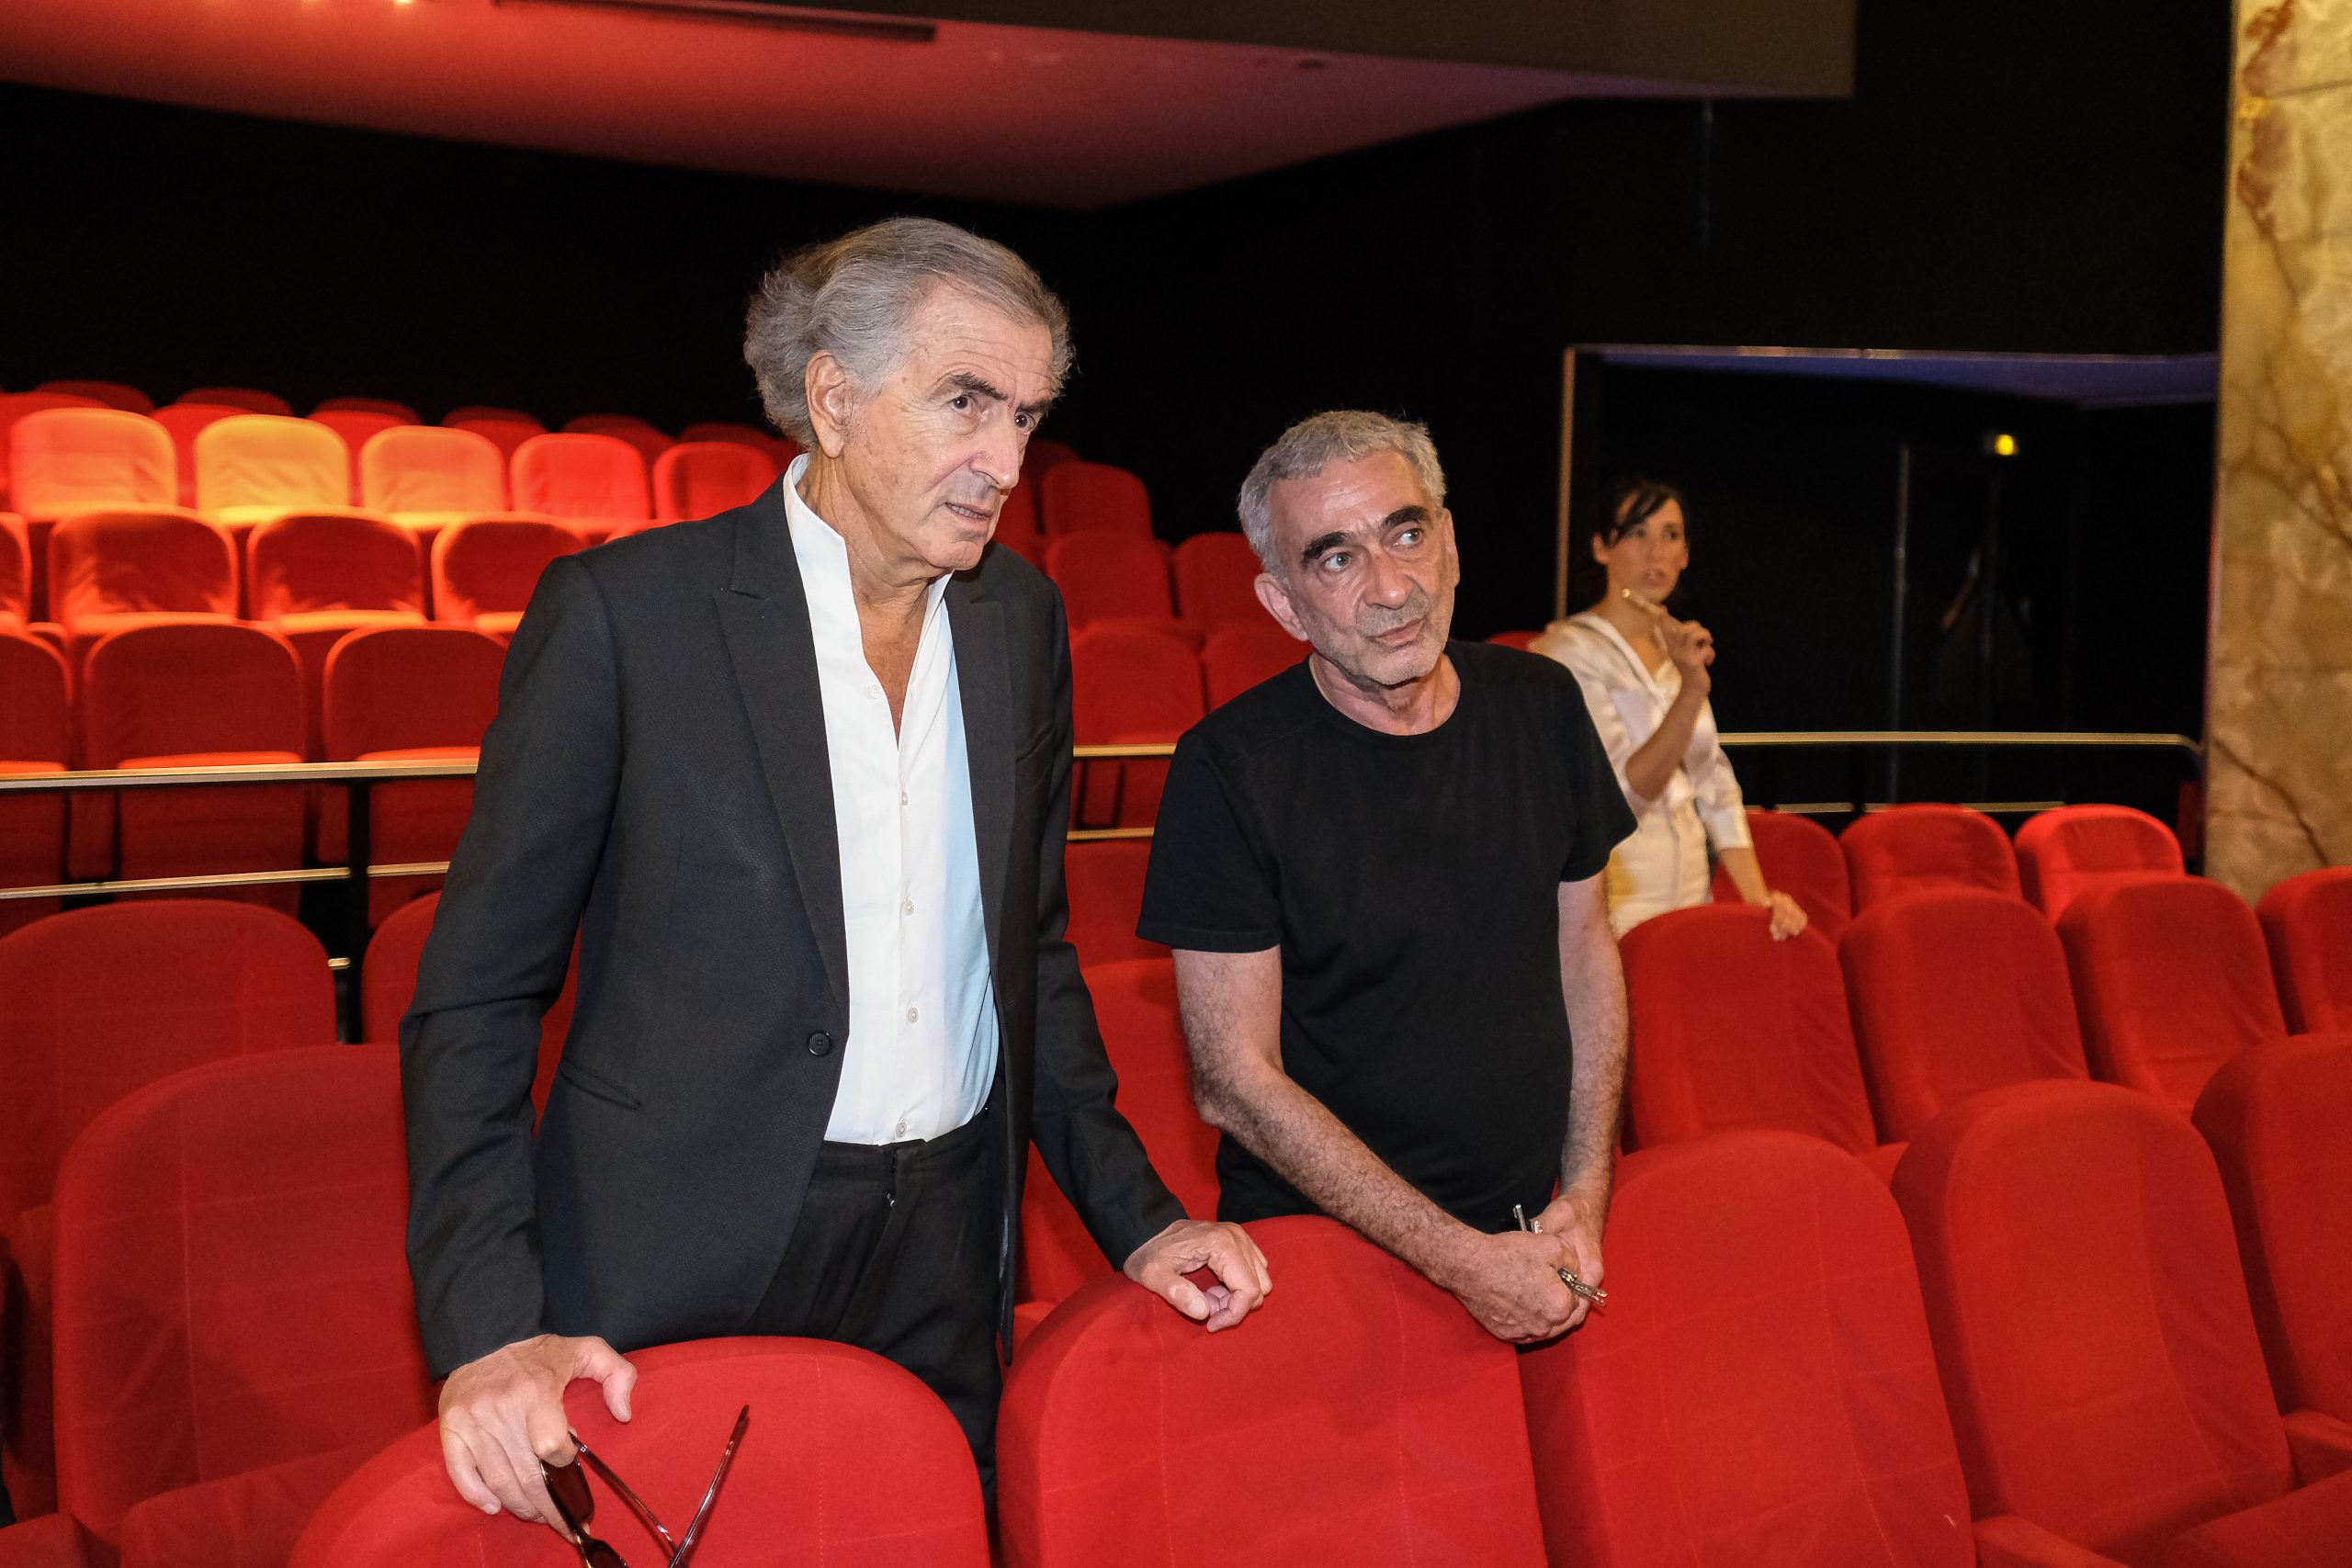 Bernard-Henri Lévy avant la projection de son film « Pourquoi l'Ukraine », au Cinéma Le Balzac, parle avec le projectionniste